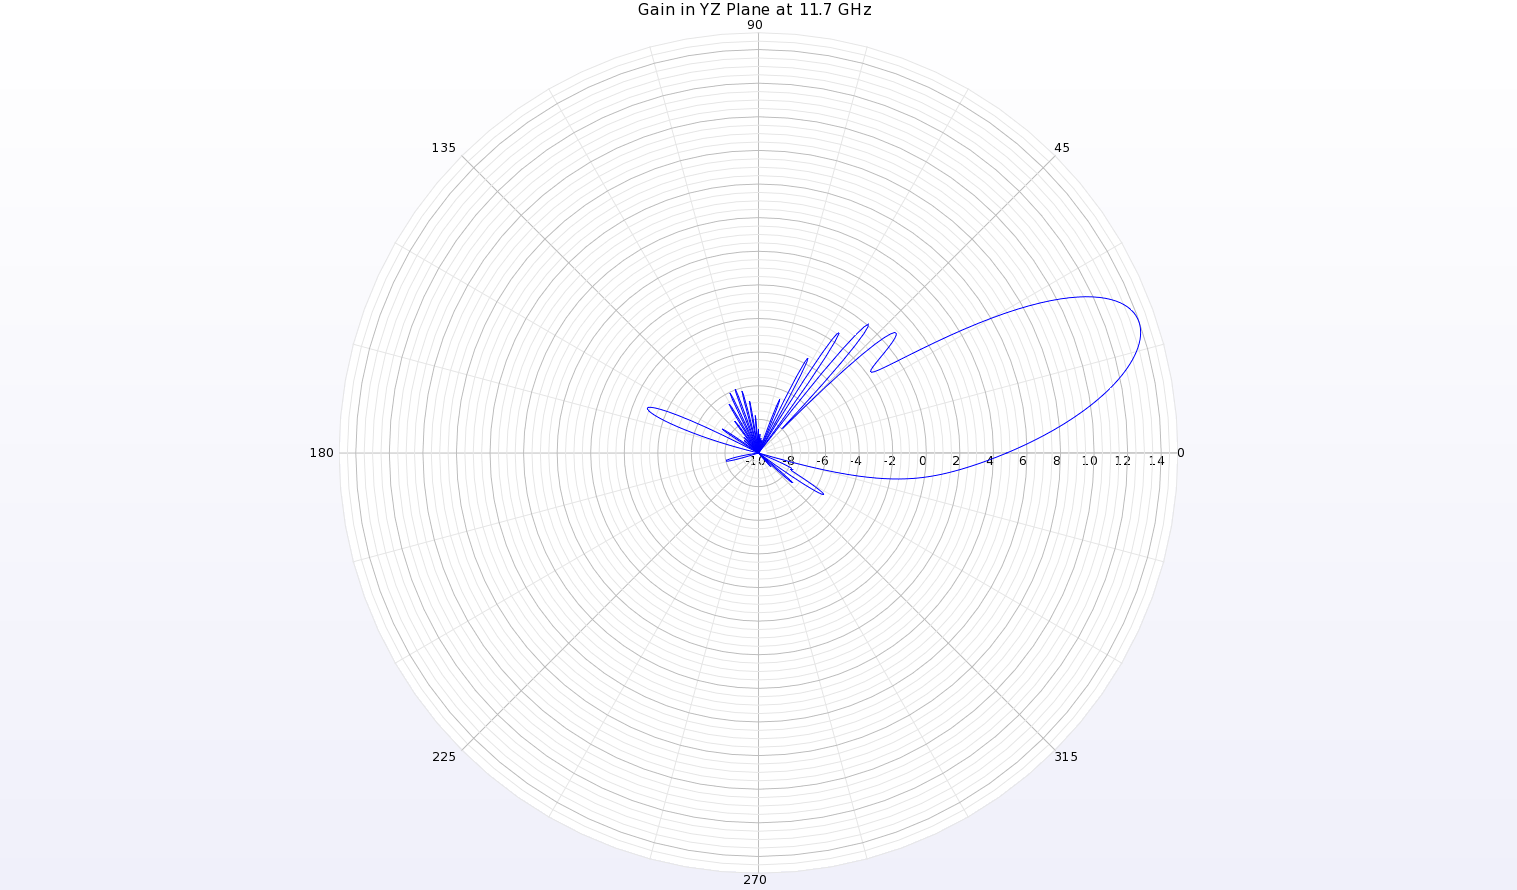 Abbildung 16: Eine Polardiagramm des Gewinndiagramms bei 11,7 GHz in der YZ-Ebene der Antenne zeigt einen Strahl bei theta=19 Grad mit einem Spitzengewinn von 14 dBi.